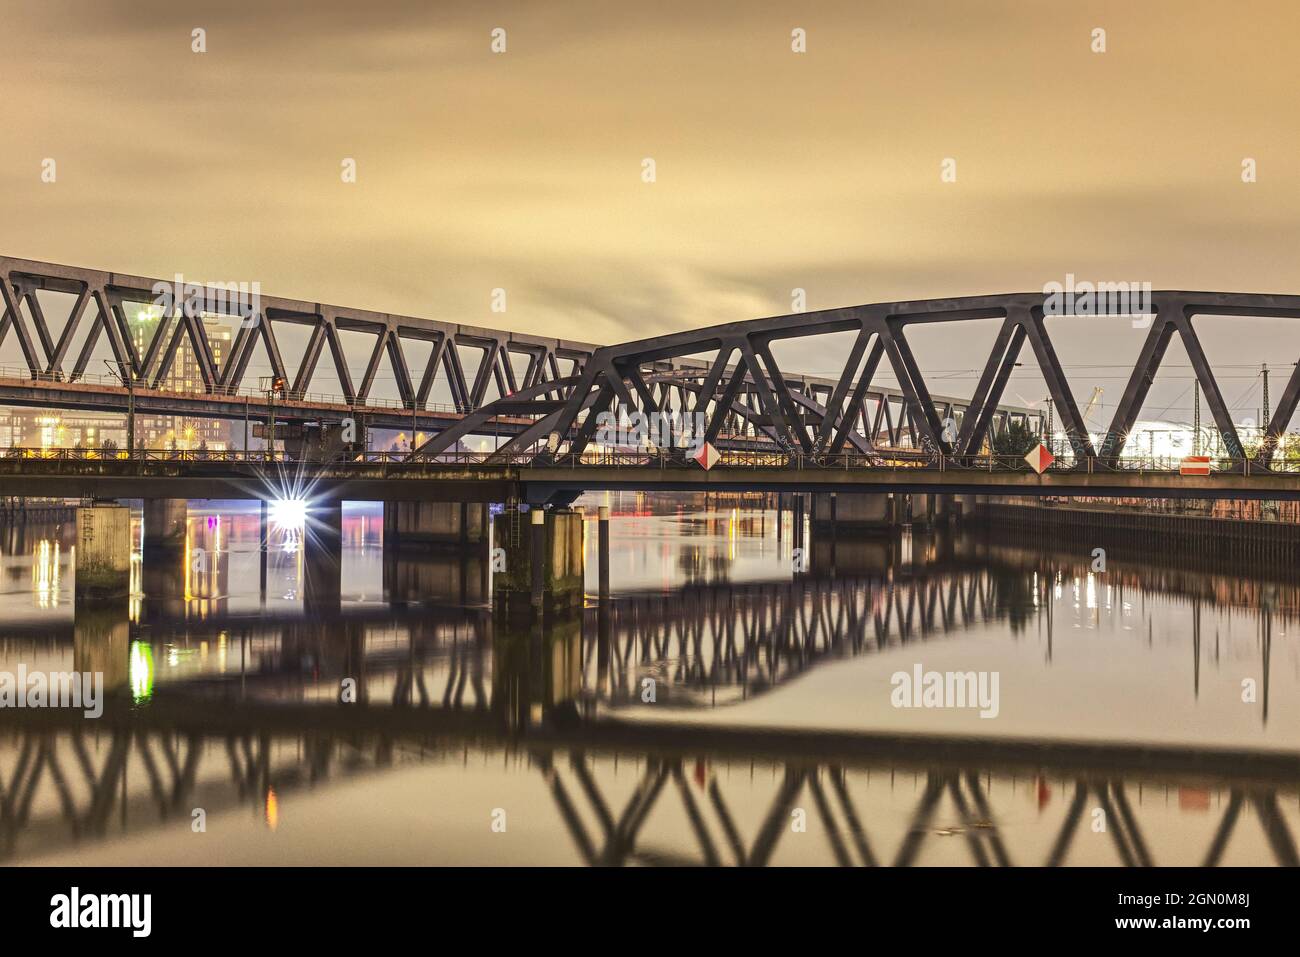 scenic night shot of railway bridge at night Stock Photo